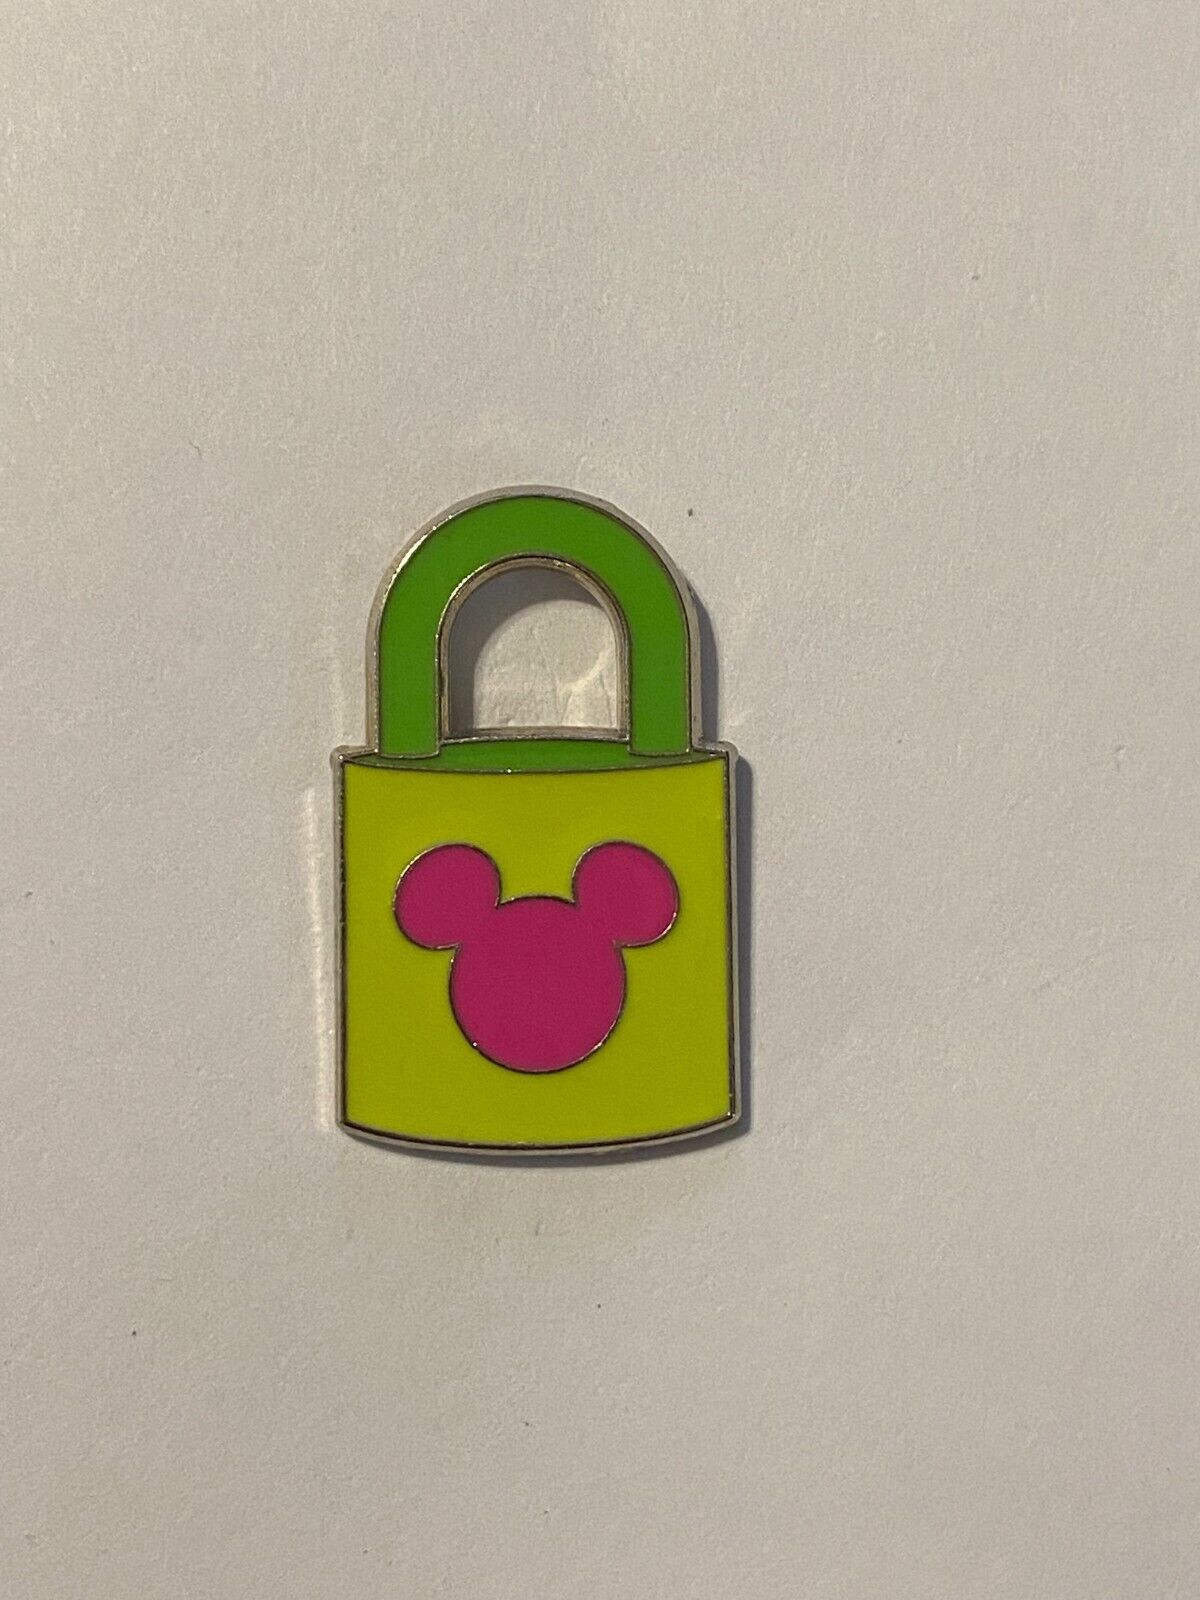 Disney Trading Pin Yellow Pink Green Lock p5